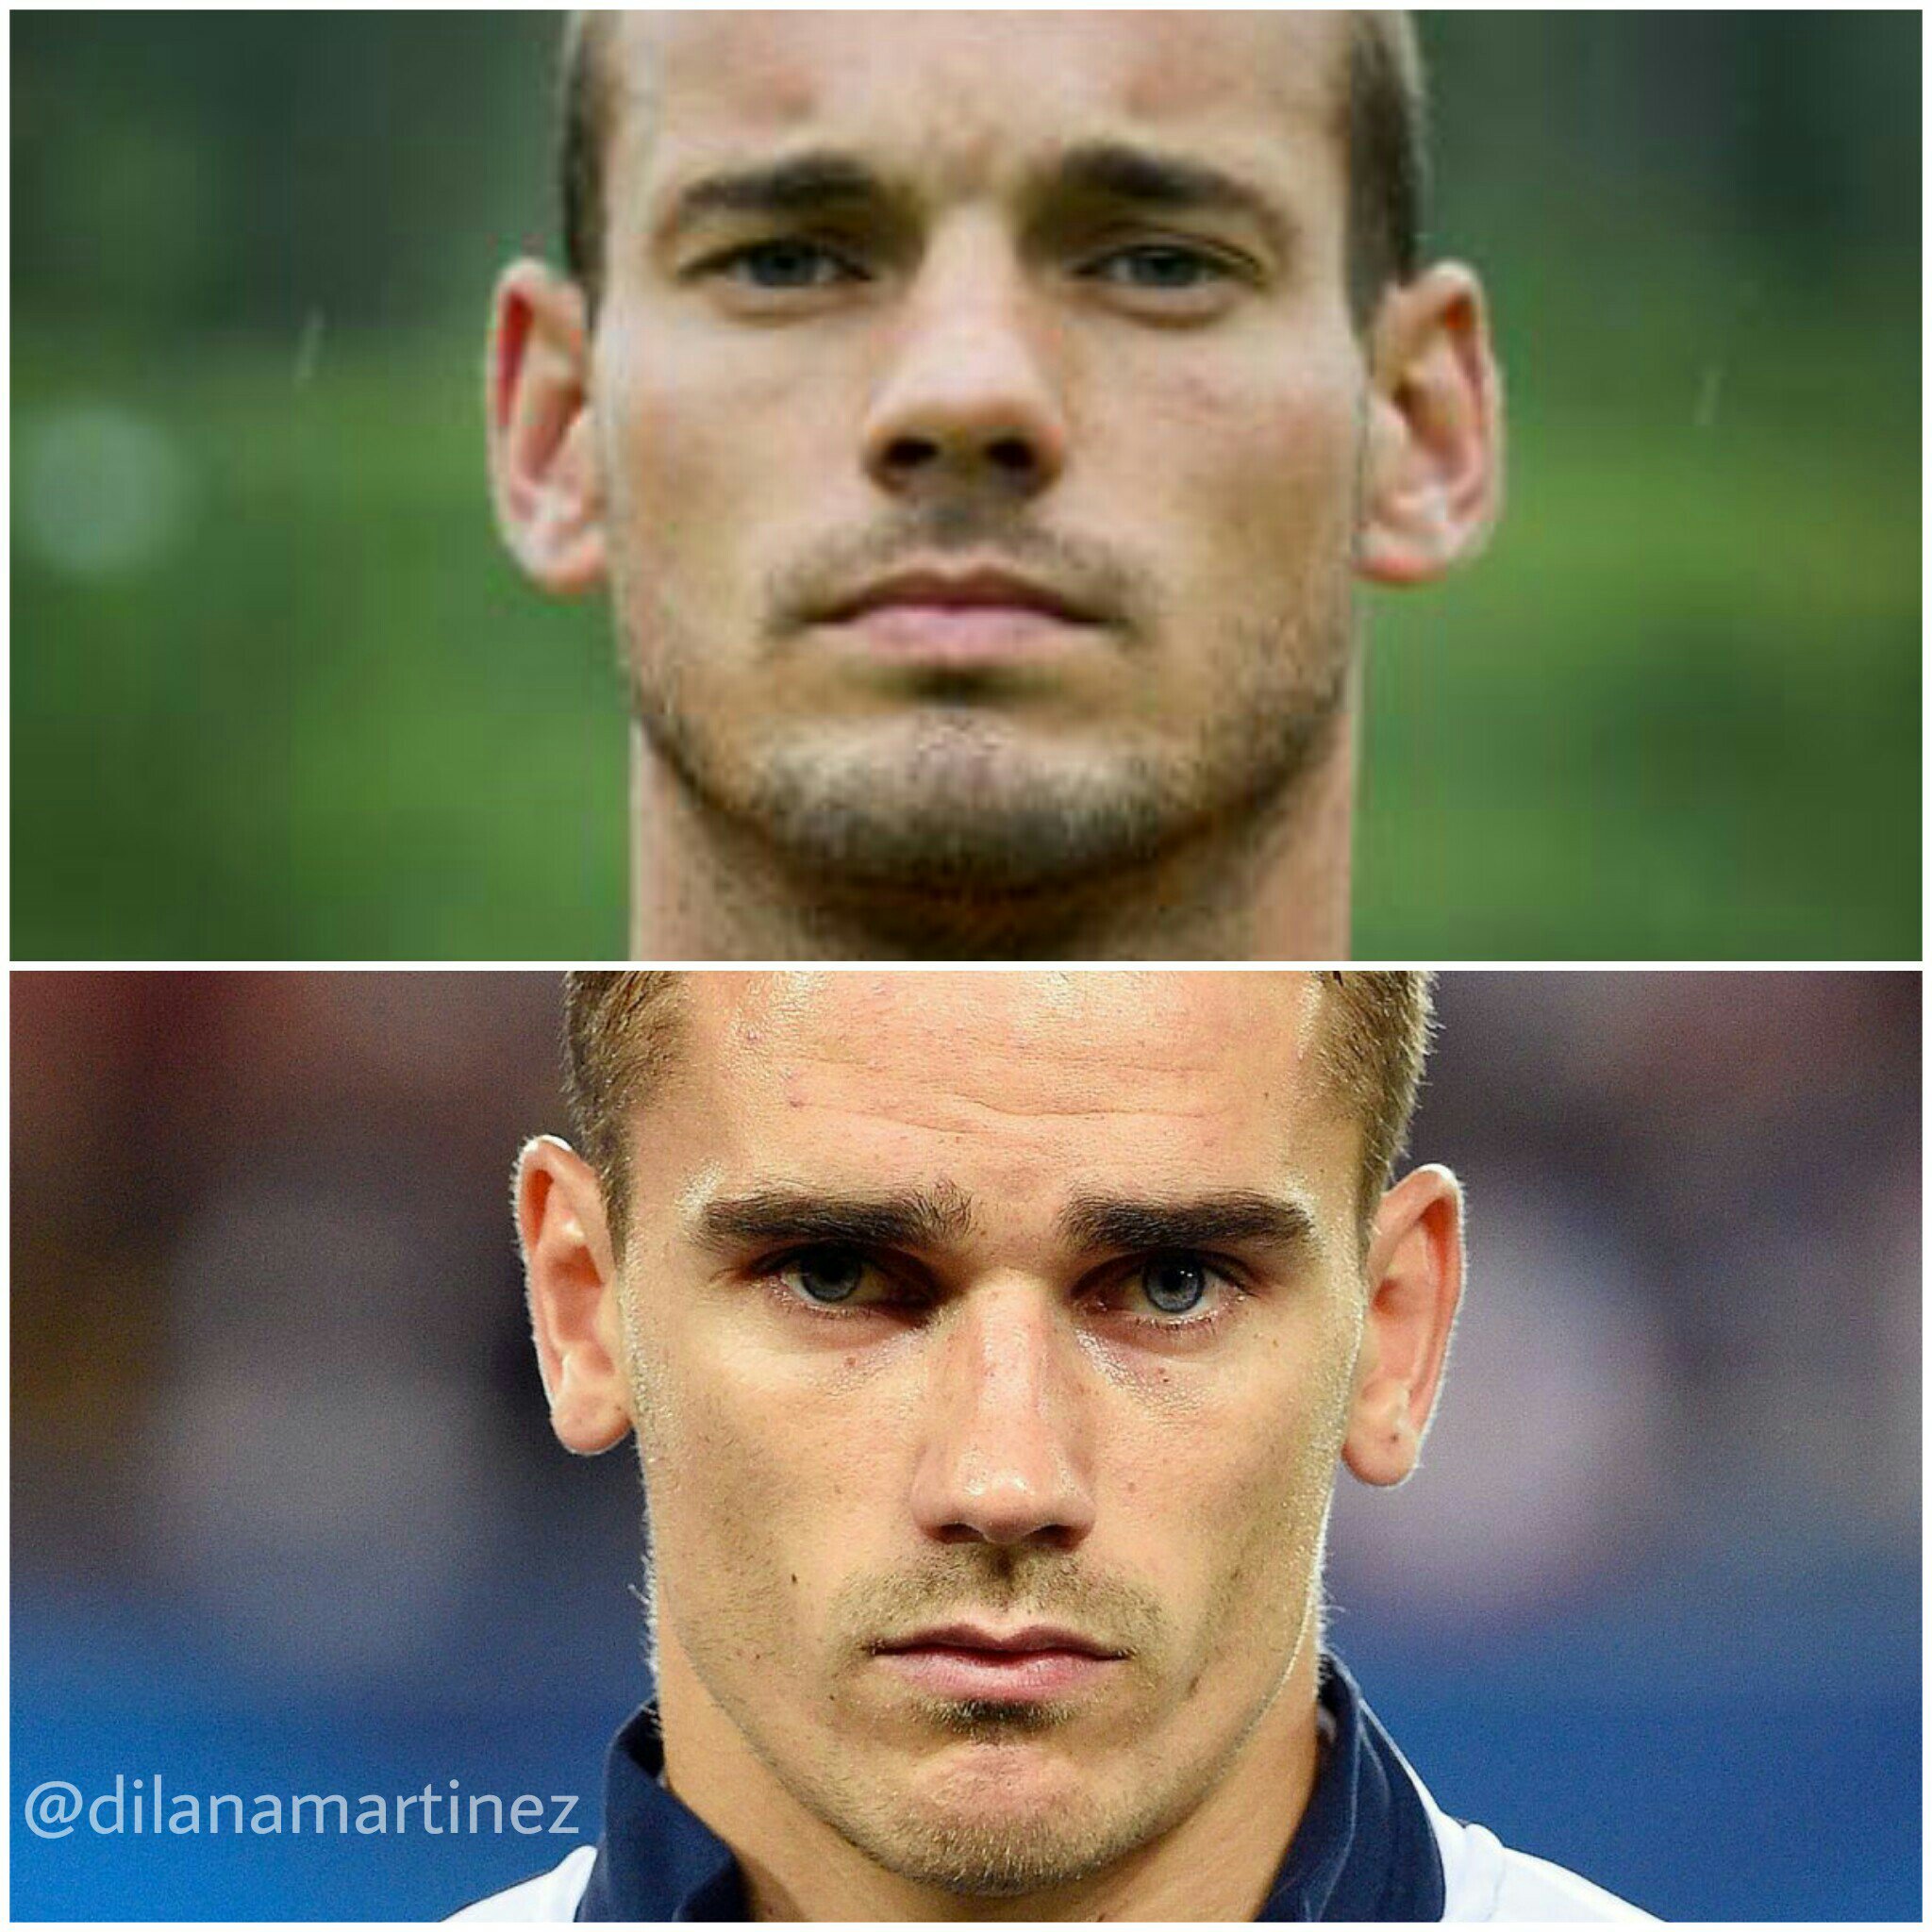 Dd Auf Twitter Antoine Griezmann And Wesley Sneijder Look Like Brothers Lol Antoinegriezmann Germany France Wesleysneijder Ek